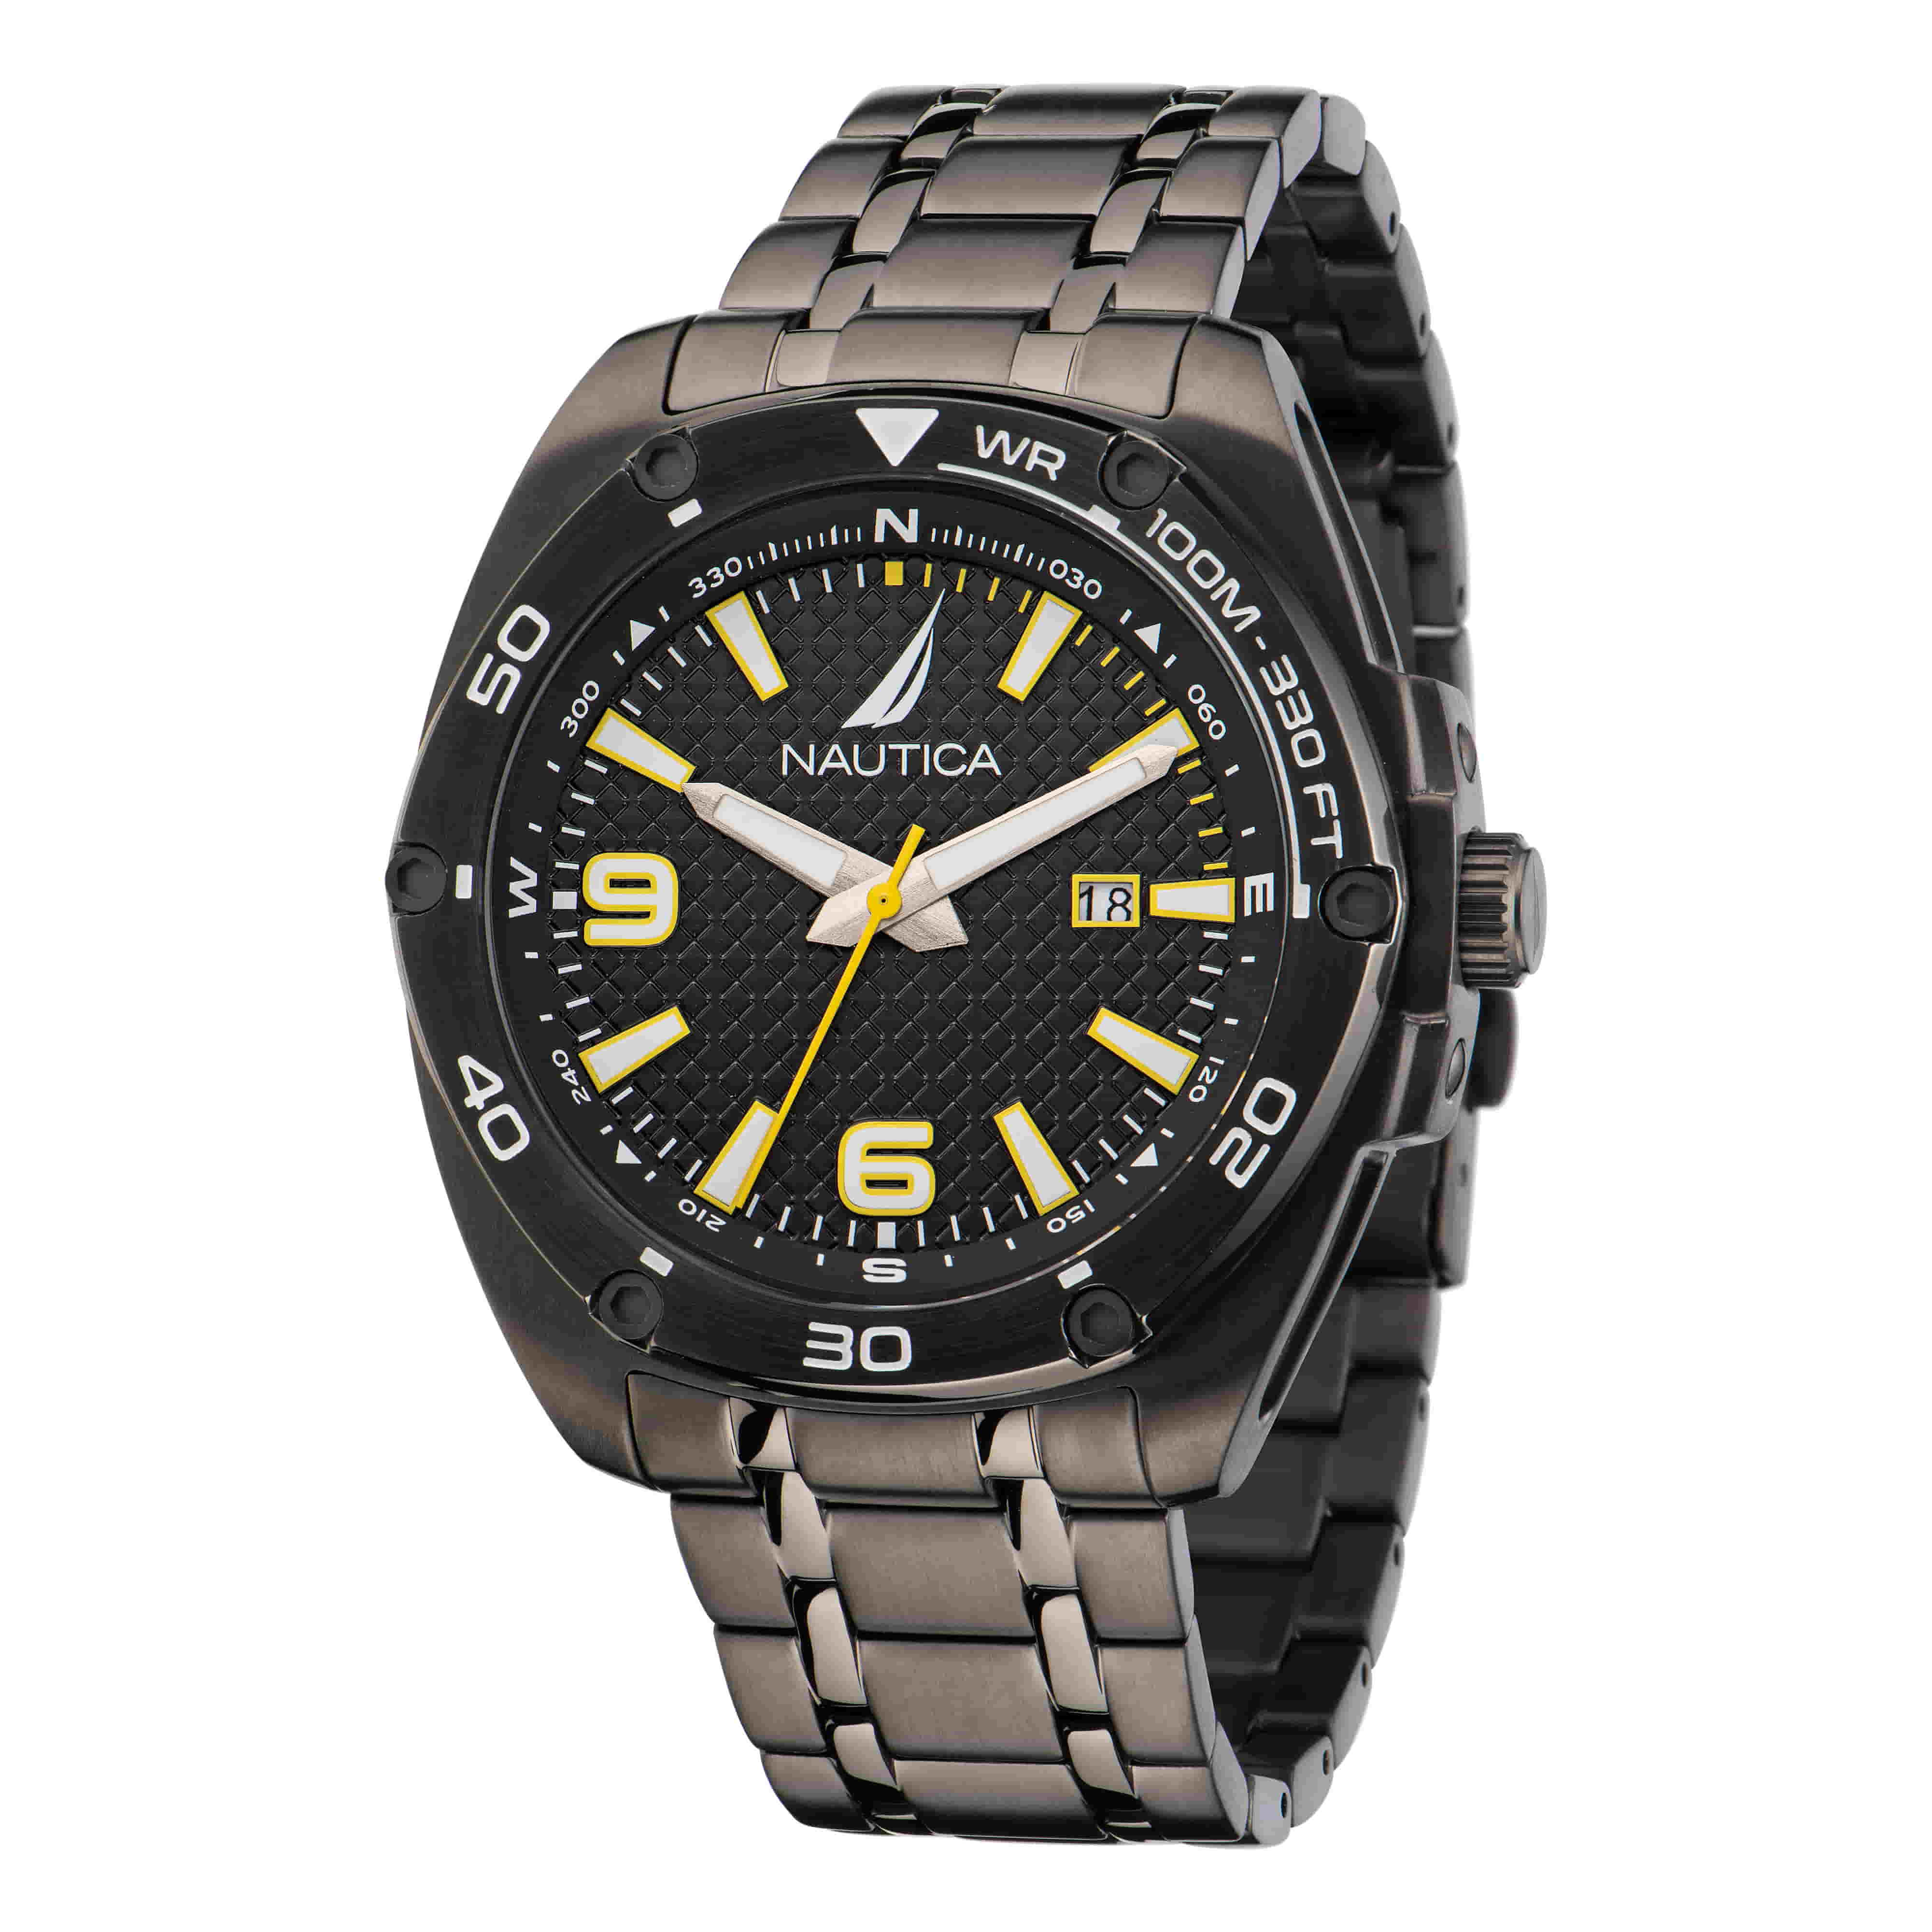 Nautica NST 02 Black Dial Orange Silicone Strap Men's Sports Watch N17614G  656086053159 - Watches, Nst 02 - Jomashop